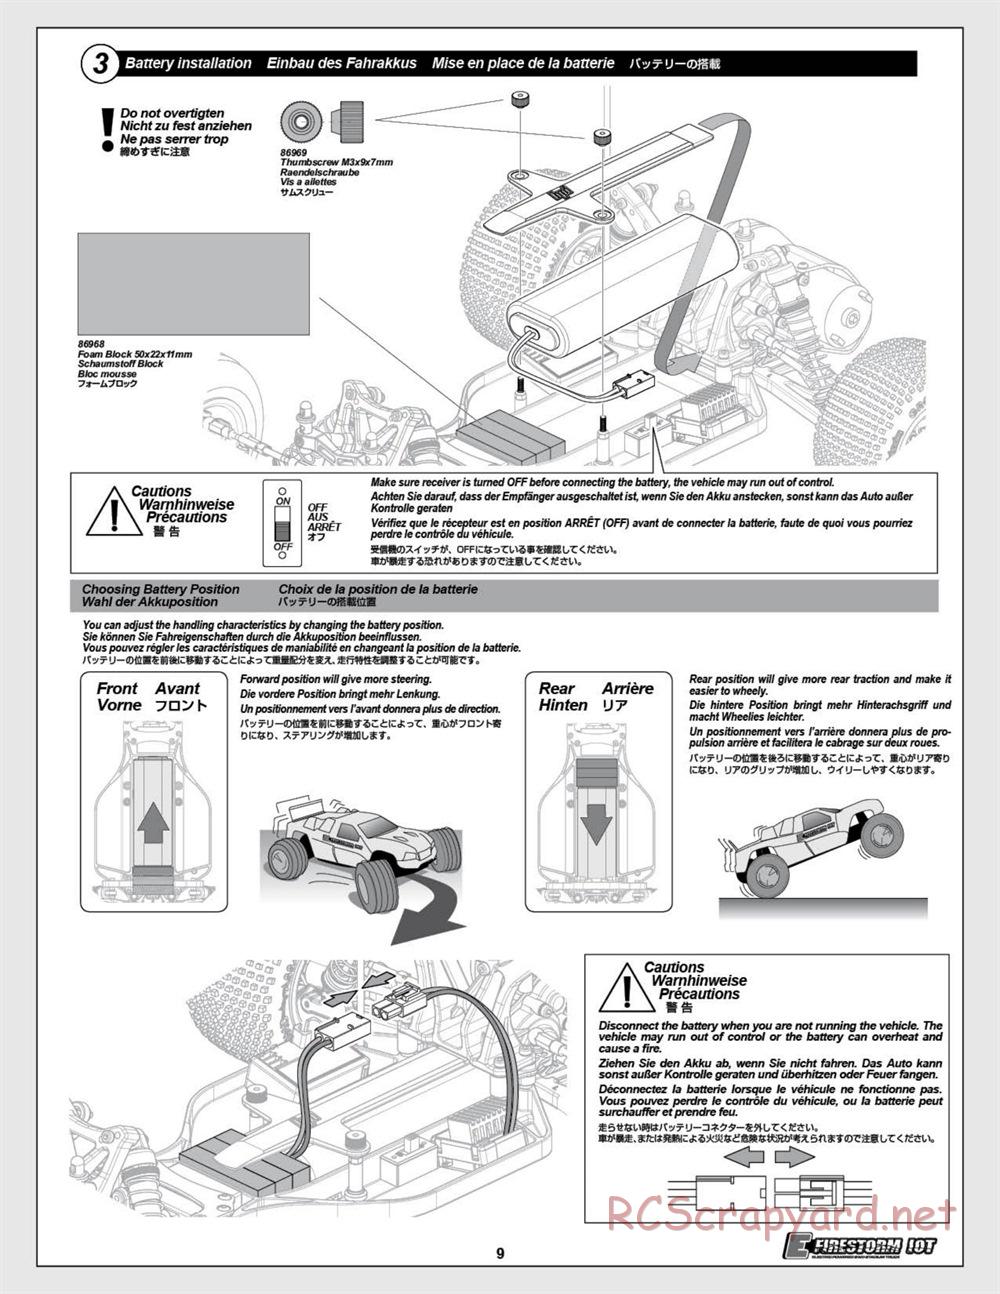 HPI - E-Firestorm 10T - Manual - Page 9